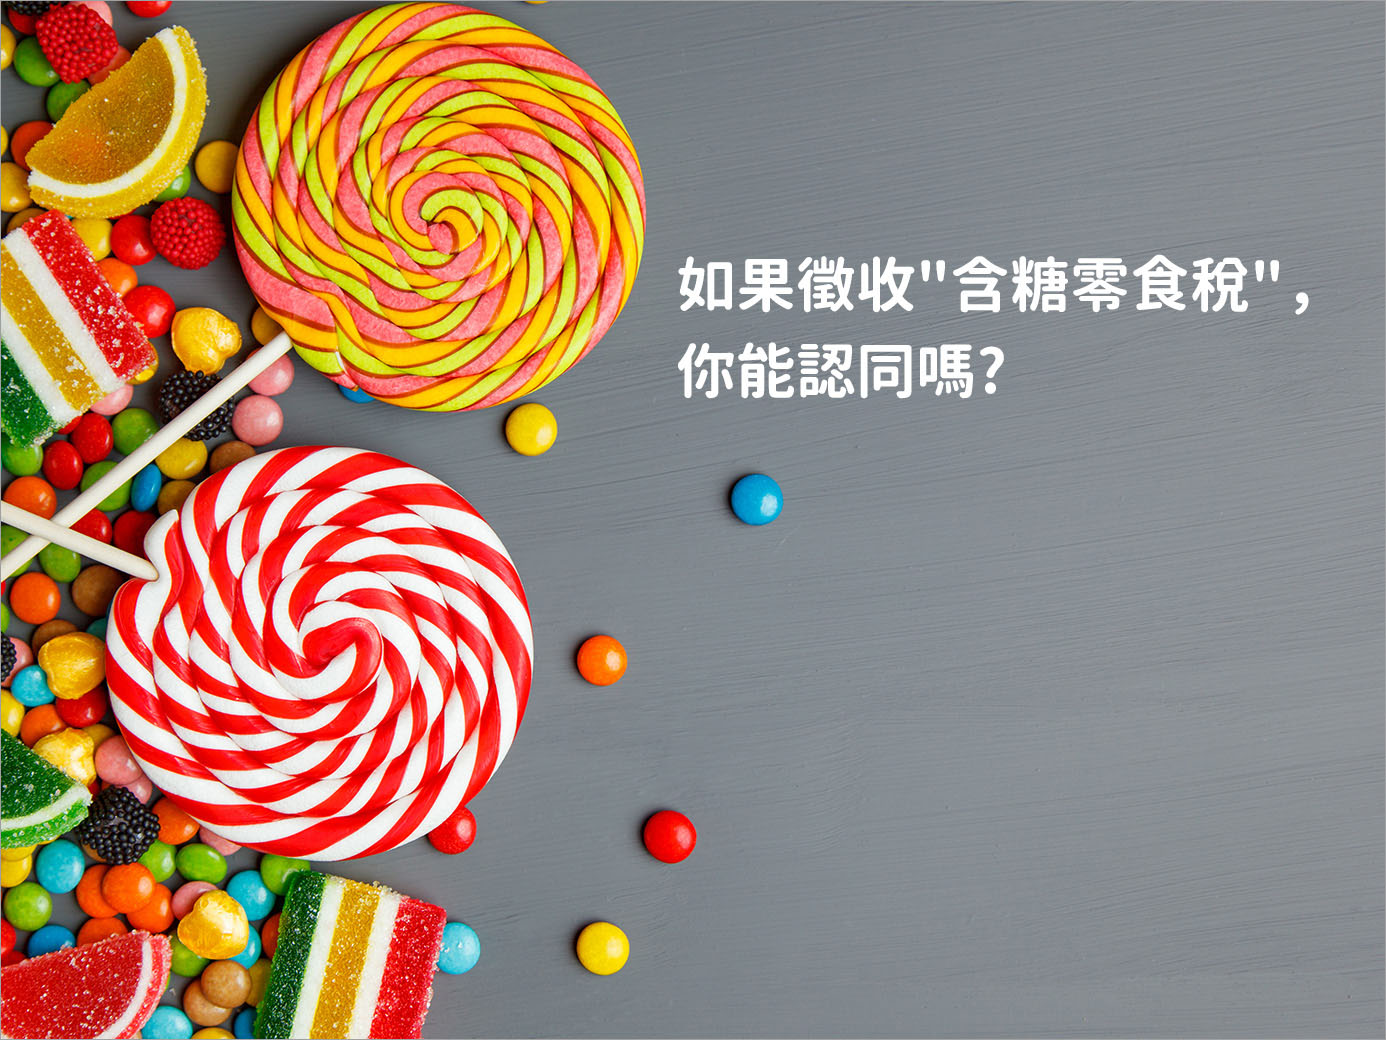 如果台灣仿效英國徵收"含糖零食稅"，你能認同嗎?